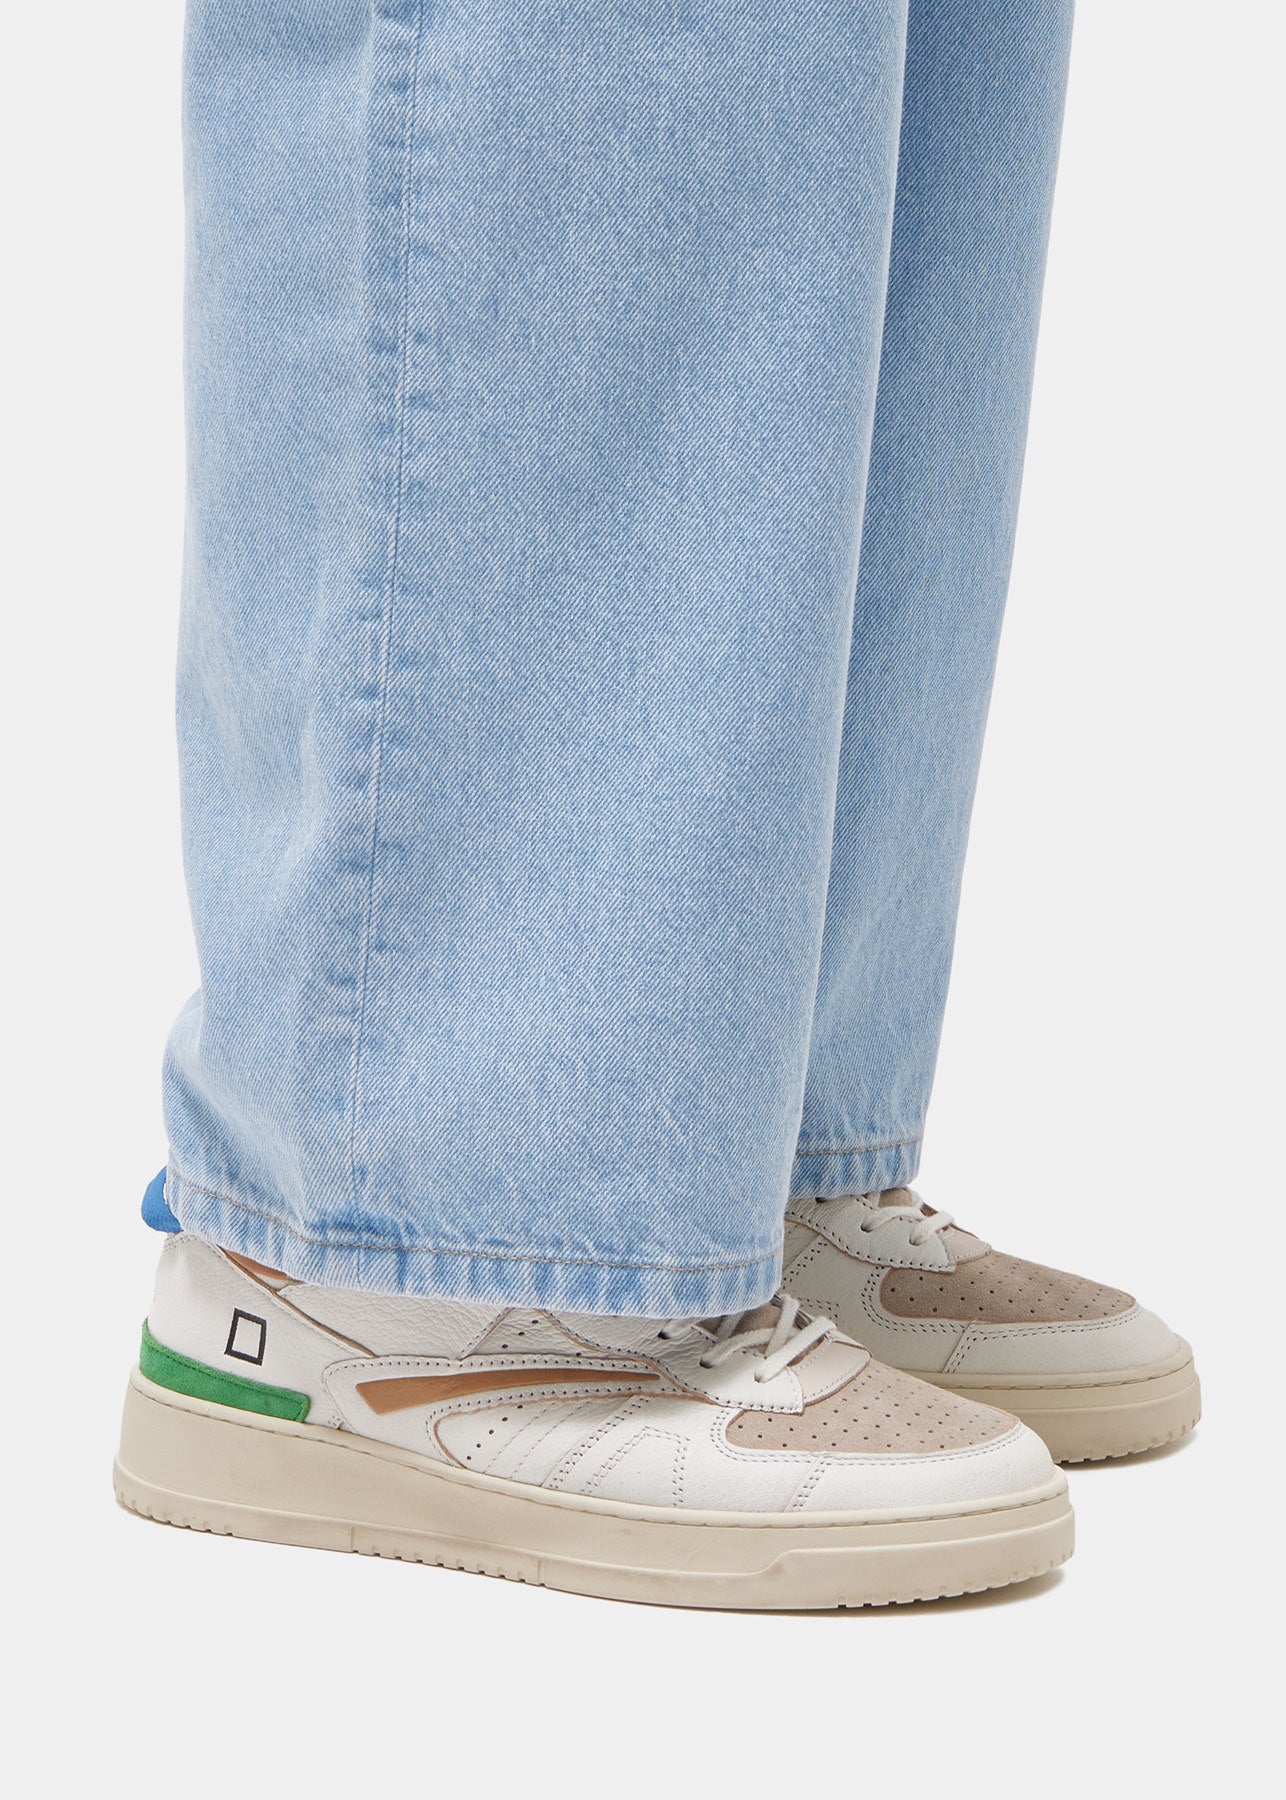 Sneaker Tornero Colored in Pelle / Bianco - Ideal Moda